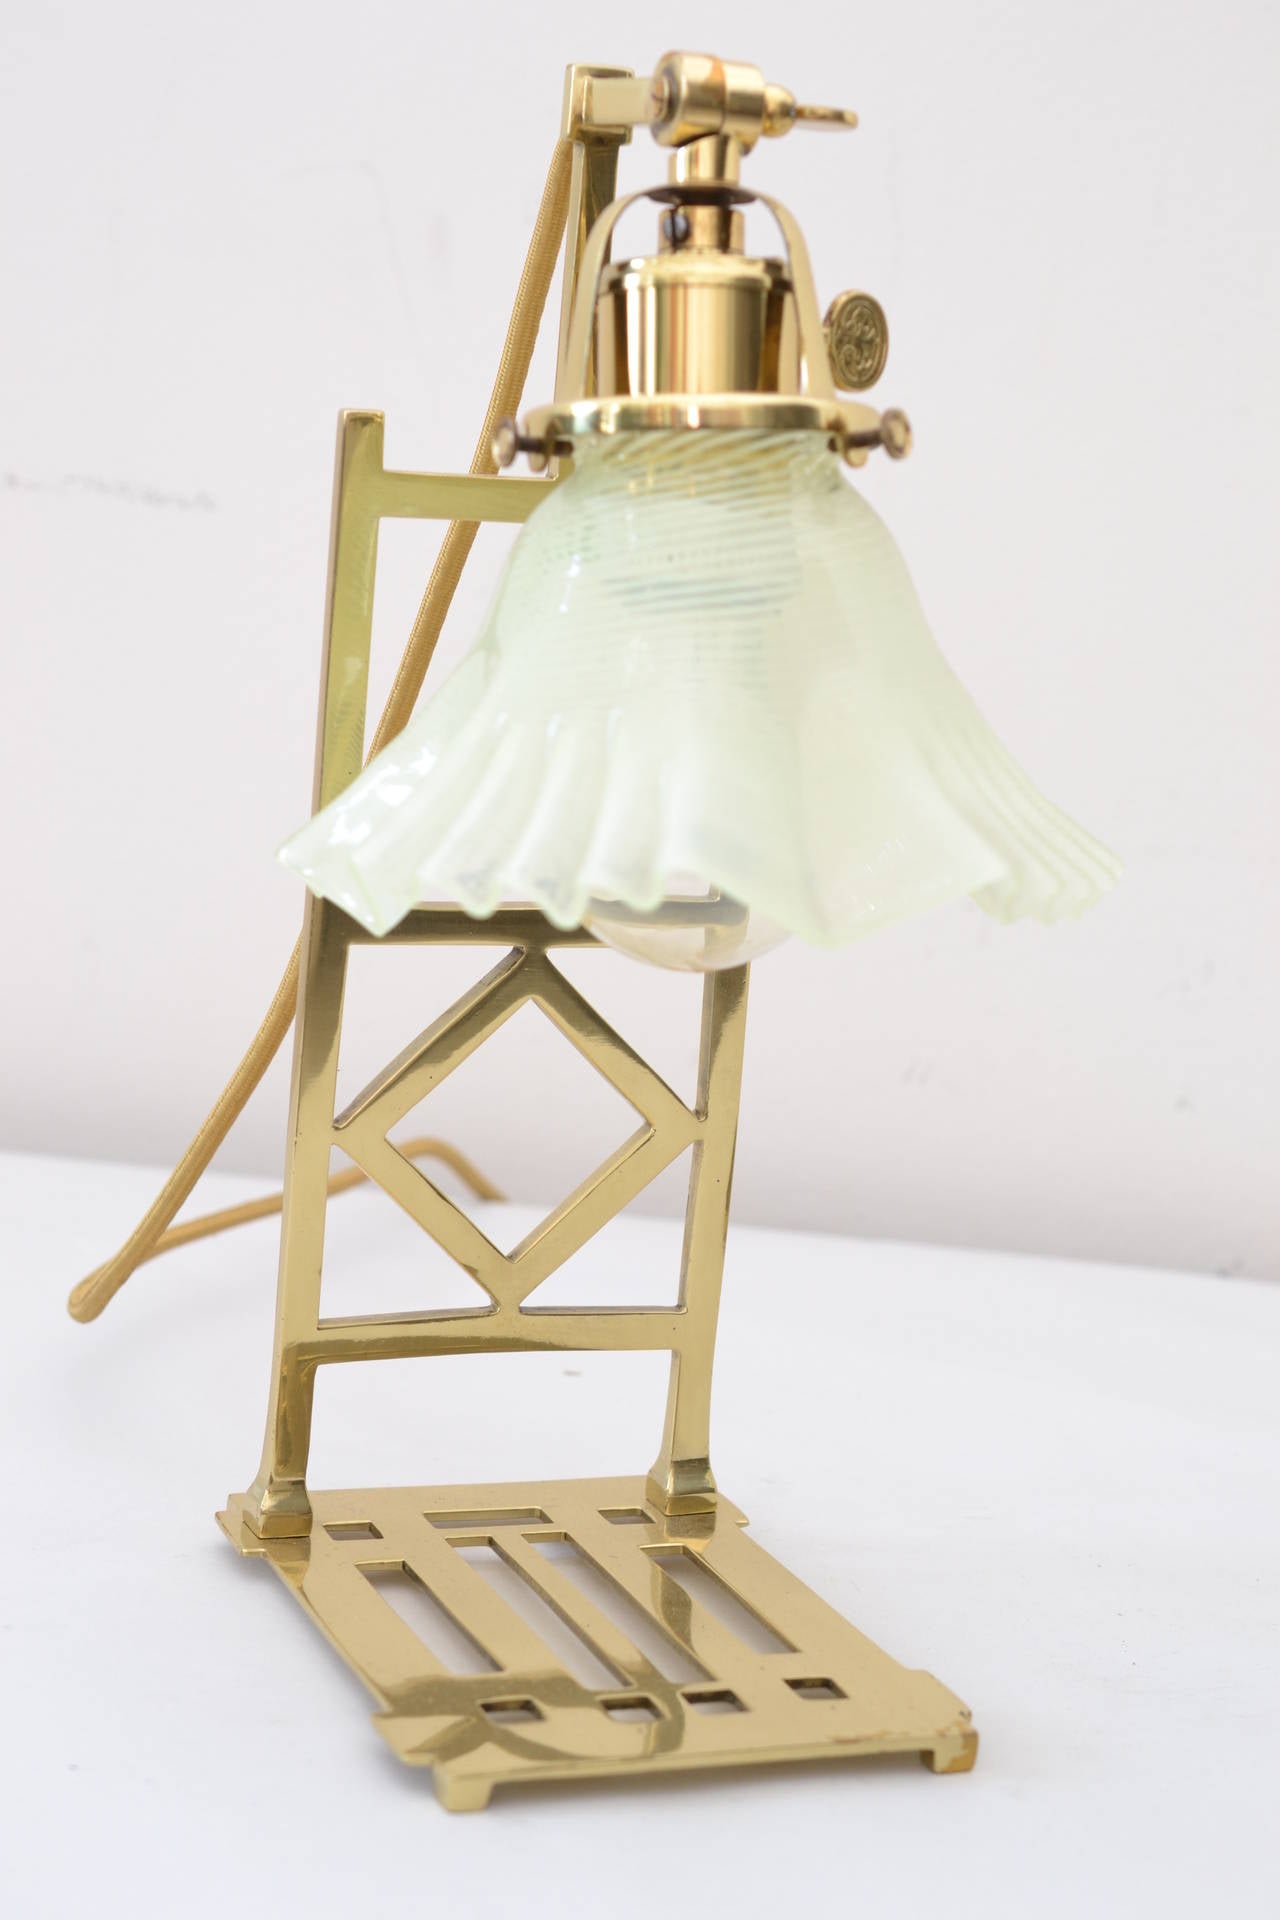 zwei tischlampen im jugendstil mit opalglasschirmen
poliert und einbrennlackiert